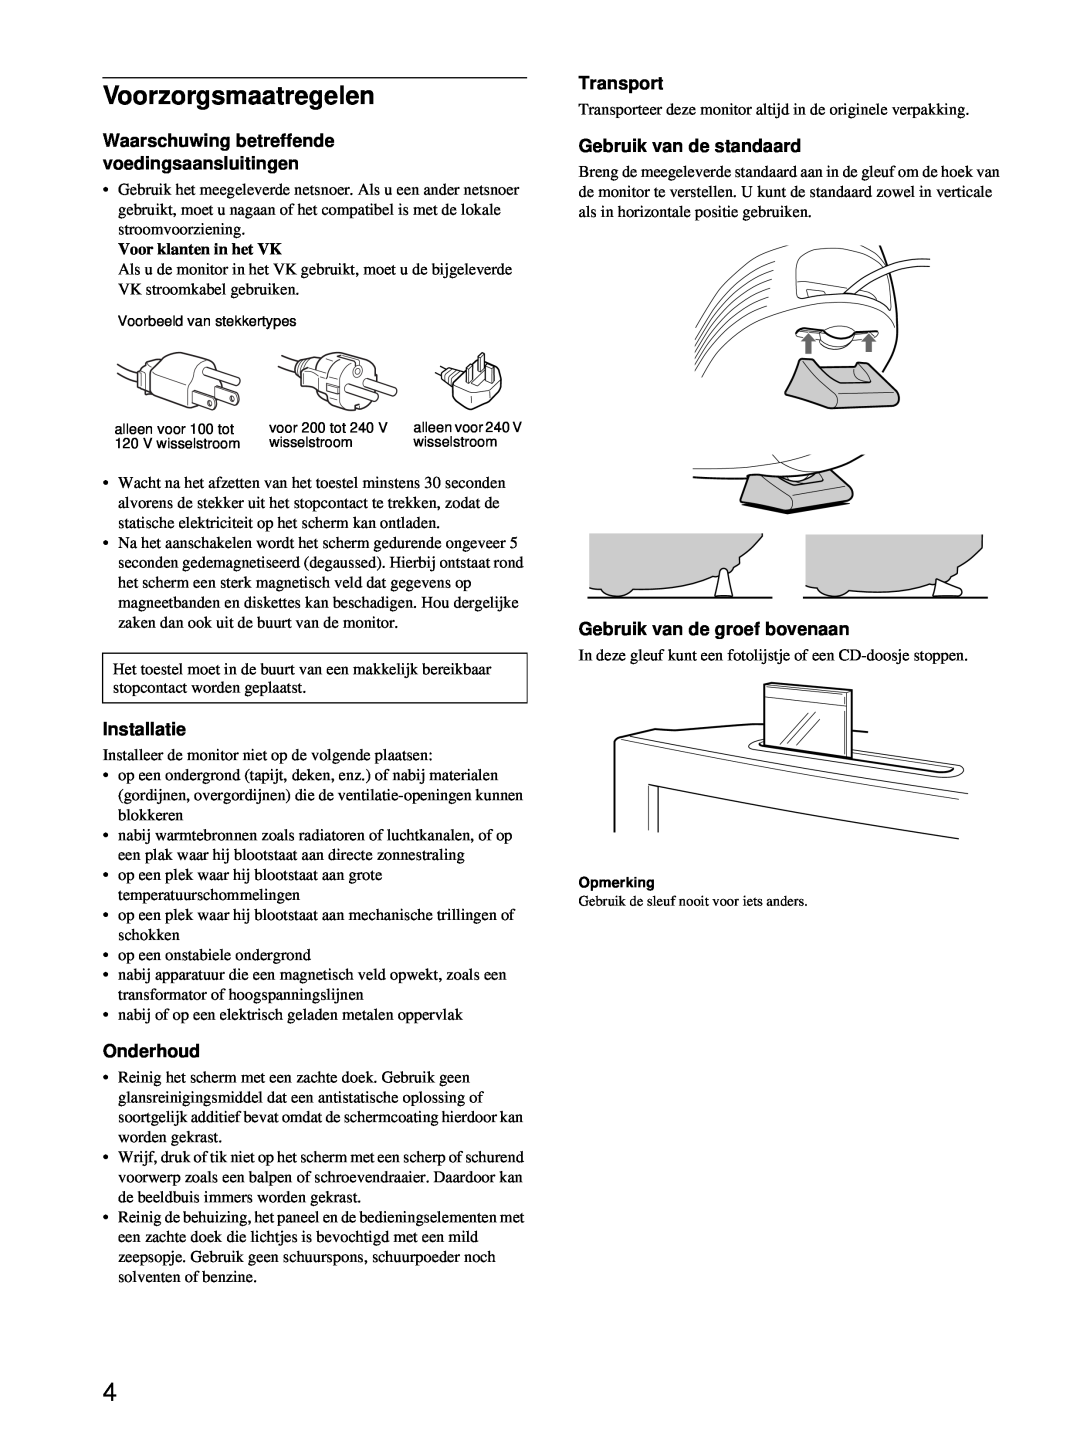 Sony HMD-A220 Voorzorgsmaatregelen, Waarschuwing betreffende voedingsaansluitingen, Gebruik van de standaard, Installatie 